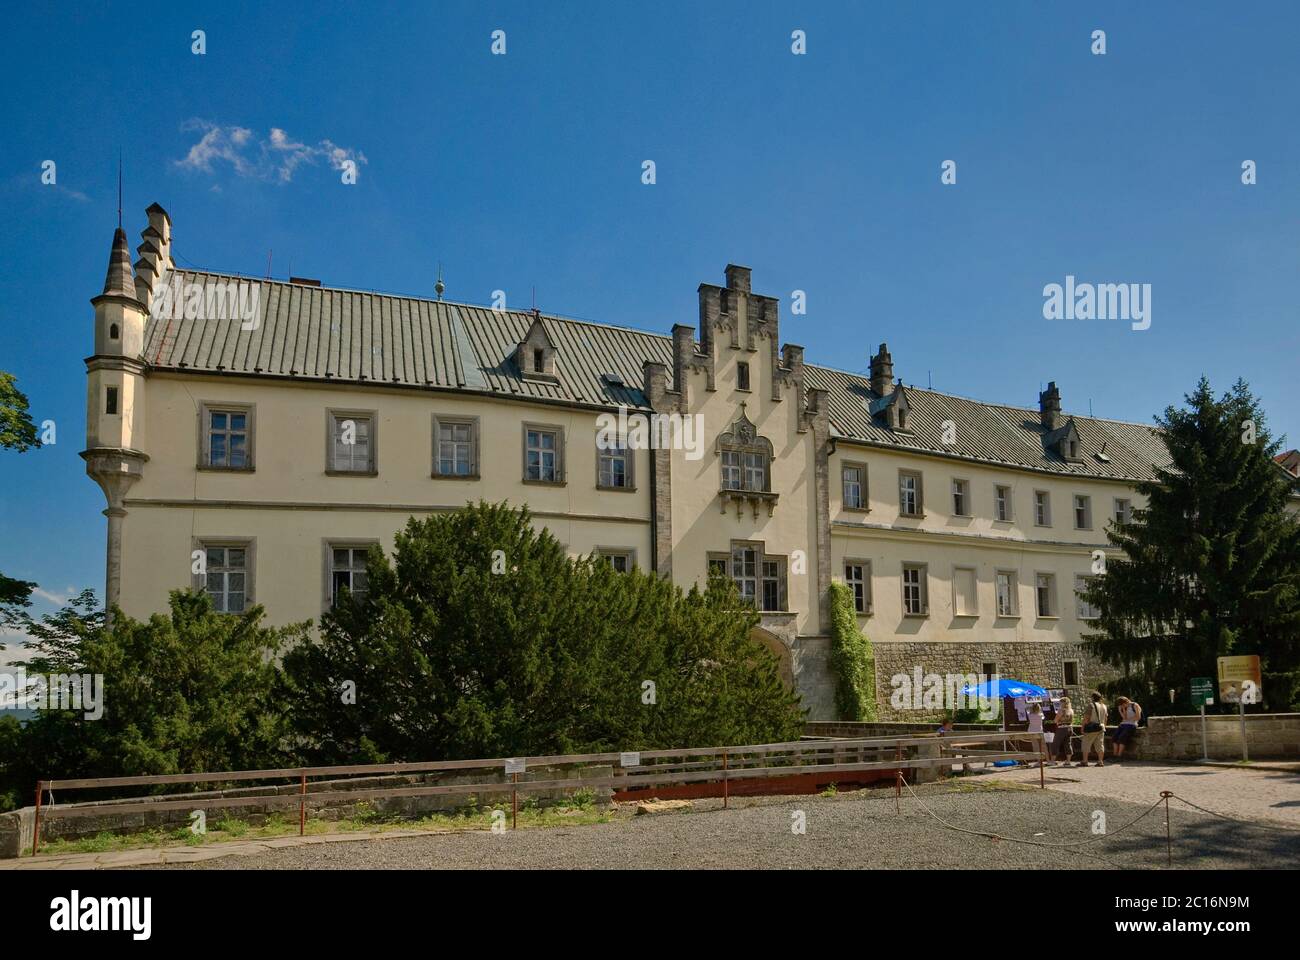 Hruba Skala castello nella zona di Český ráj in Liberecky kraj (Regione Liberec), Repubblica Ceca Foto Stock